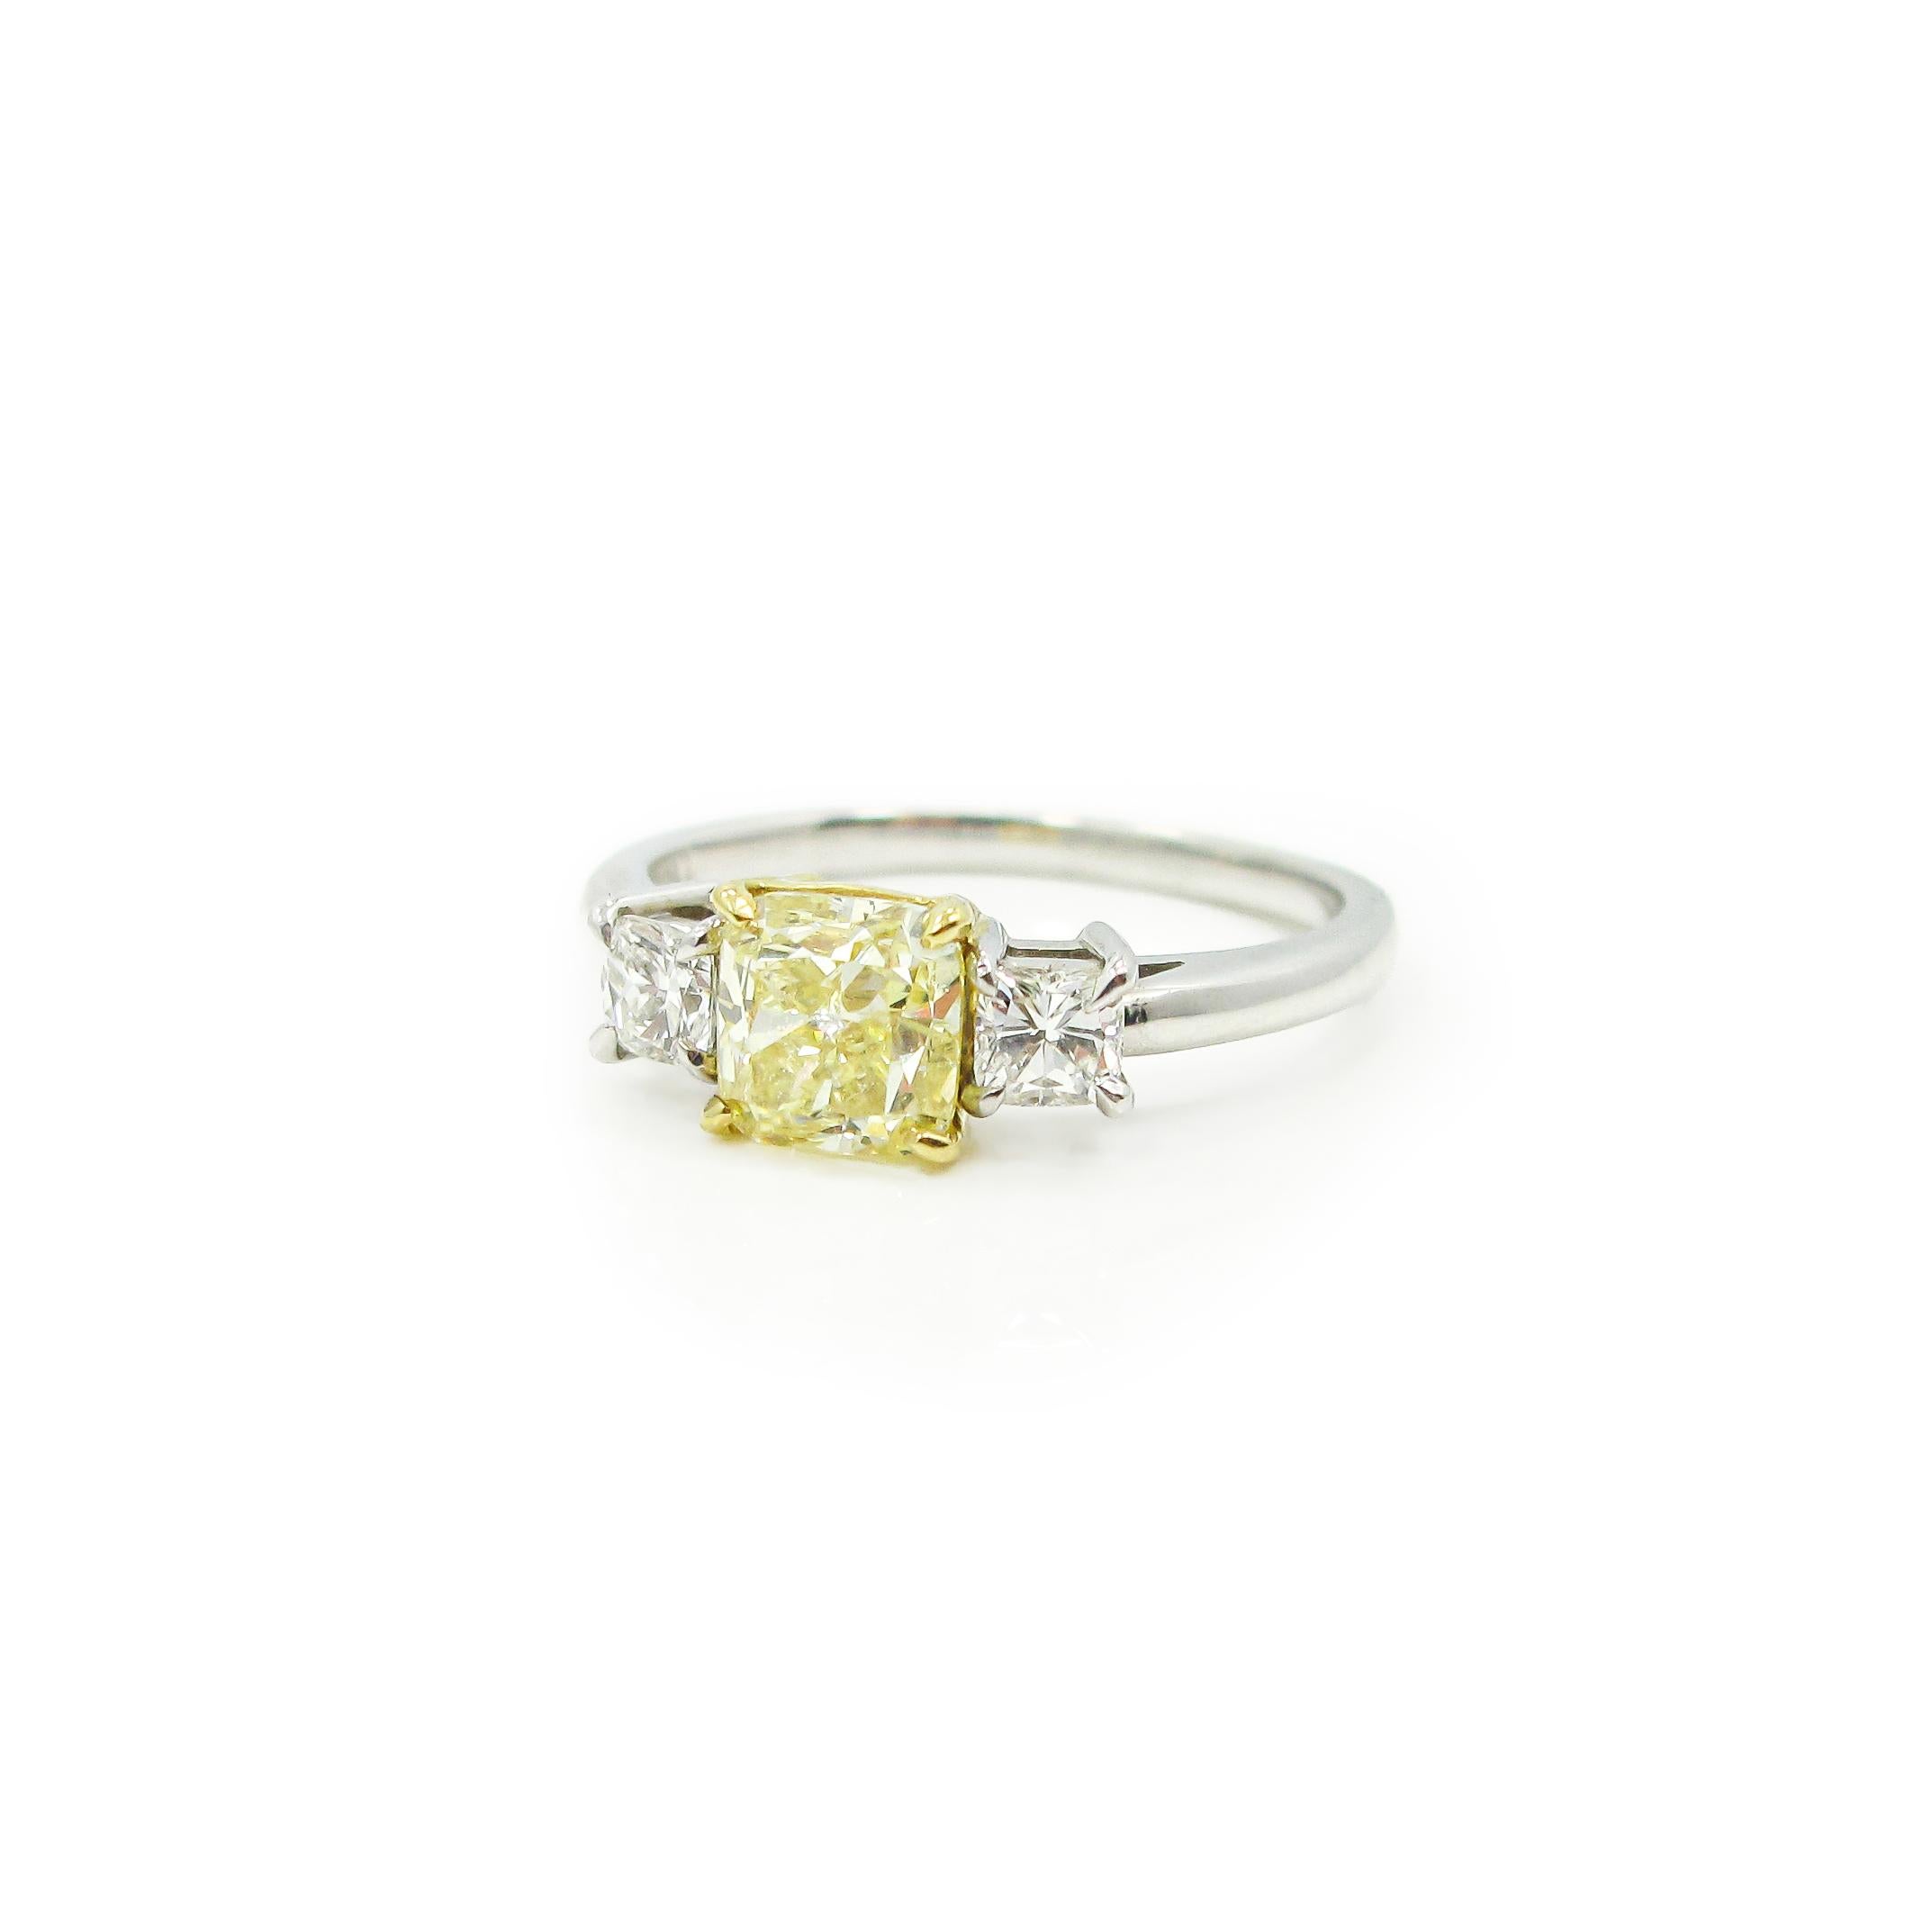 Der Mittelstein ist ein gelber Diamant im Kissenschliff mit einem Gewicht von 1,04 ct. und wird von einem GIA-Zertifikat begleitet. Der gelbe Diamant ist in einem Korb aus 18 Karat Gelbgold zwischen zwei kissenförmig geschliffenen Diamanten mit